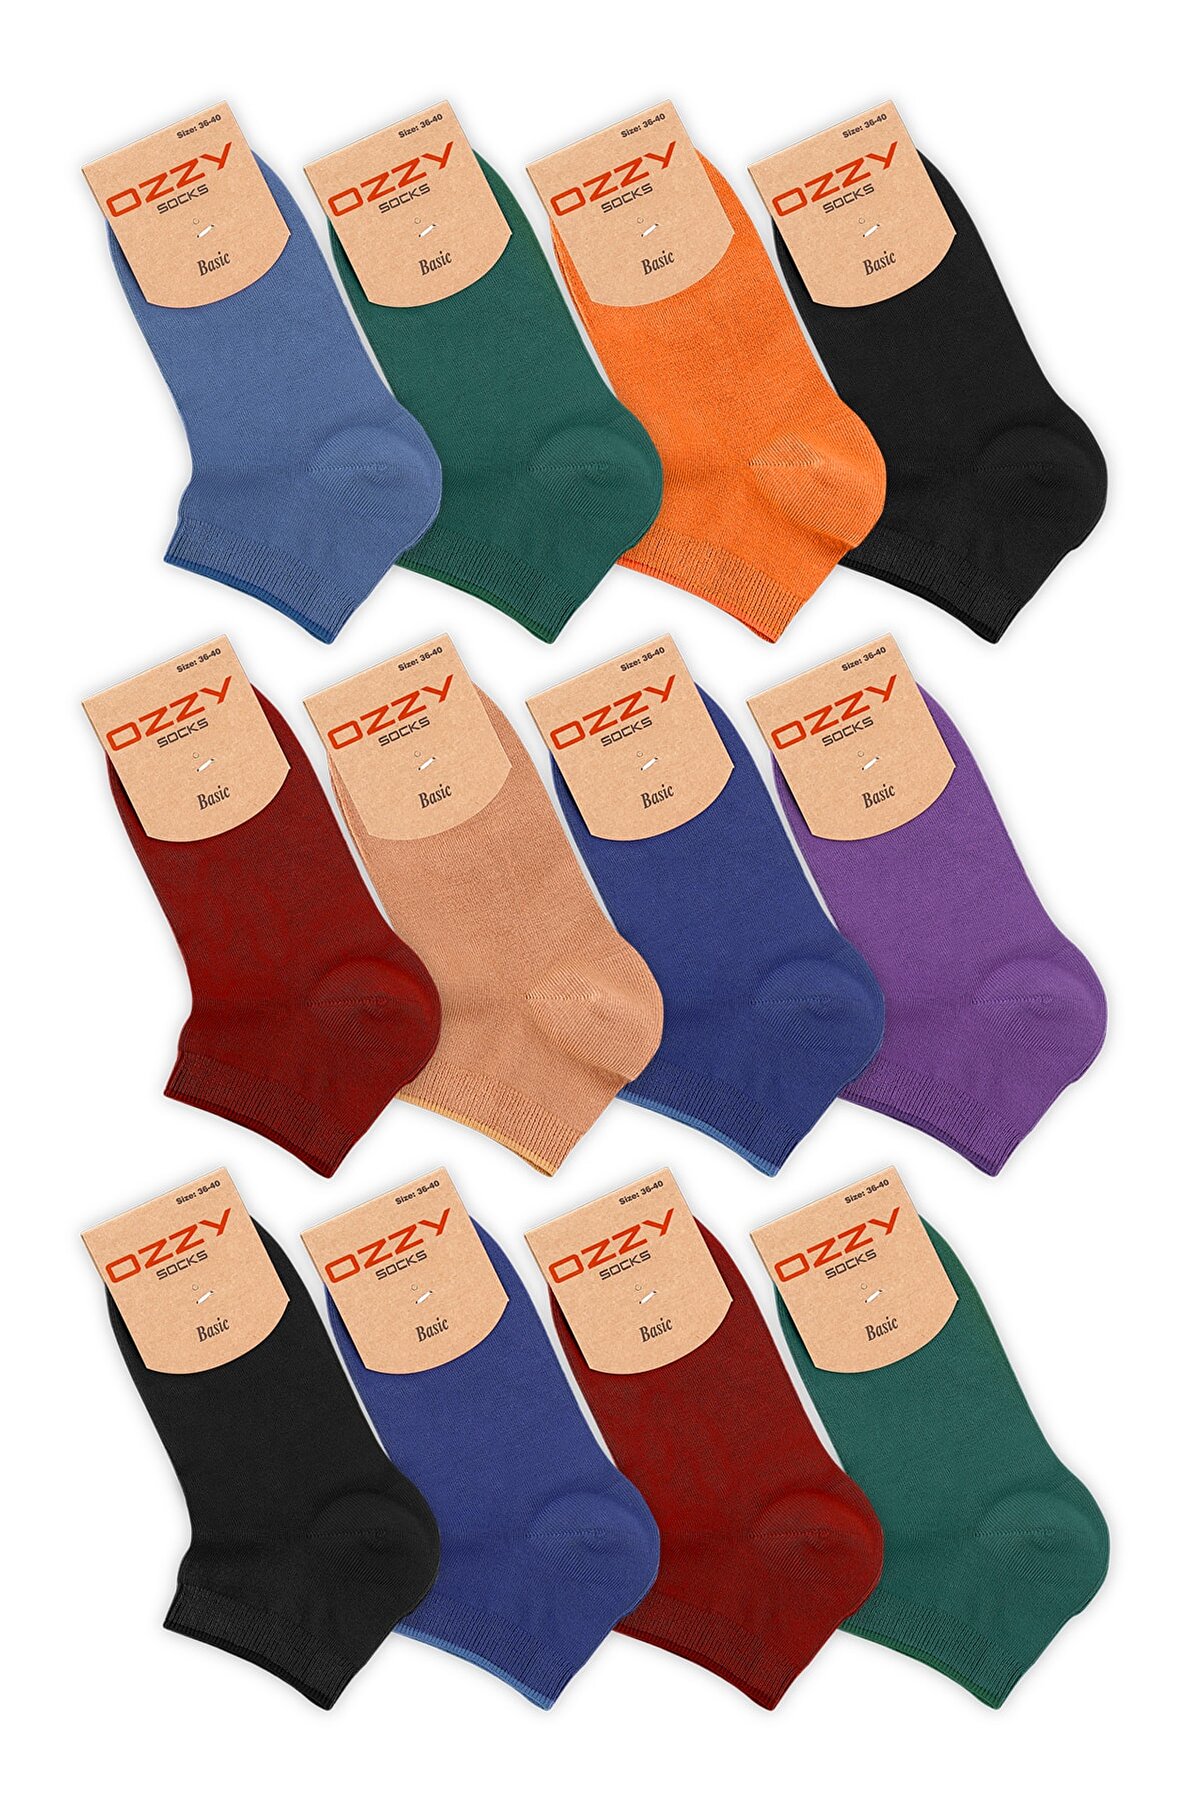 Ozzy Socks Kadın 12 Çift Bambu Dikişsiz Patik Çorap 4 Mevsim Dayanıklı Topuk Ve Burun Koyu Renkler